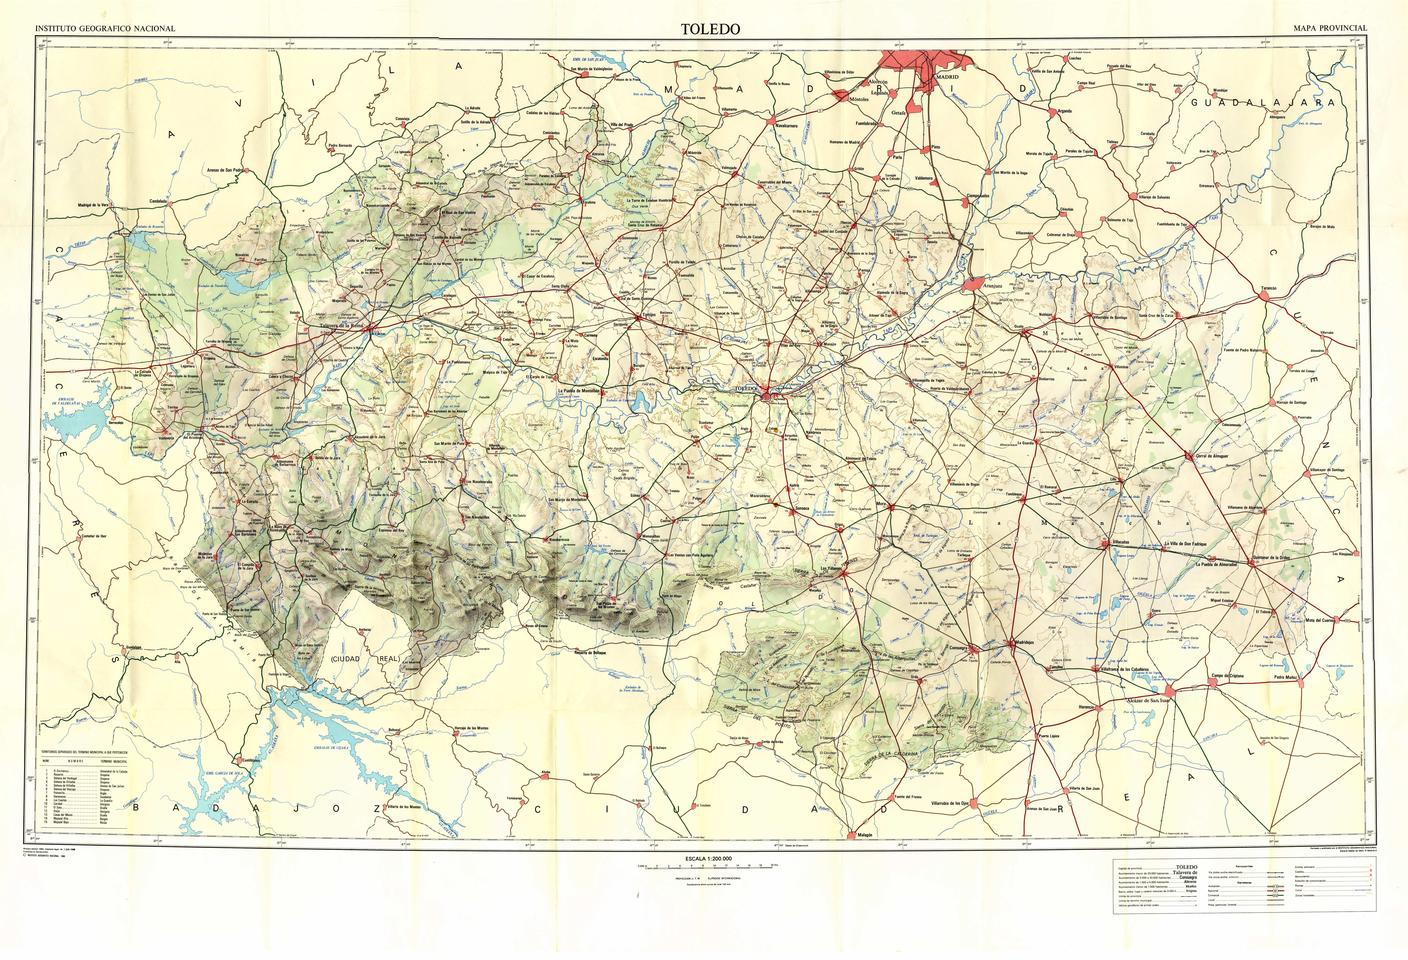 Toledo : Mapa provincial / formado y publicado por el Instituto Geográfico Nacional.-. [Imagen]